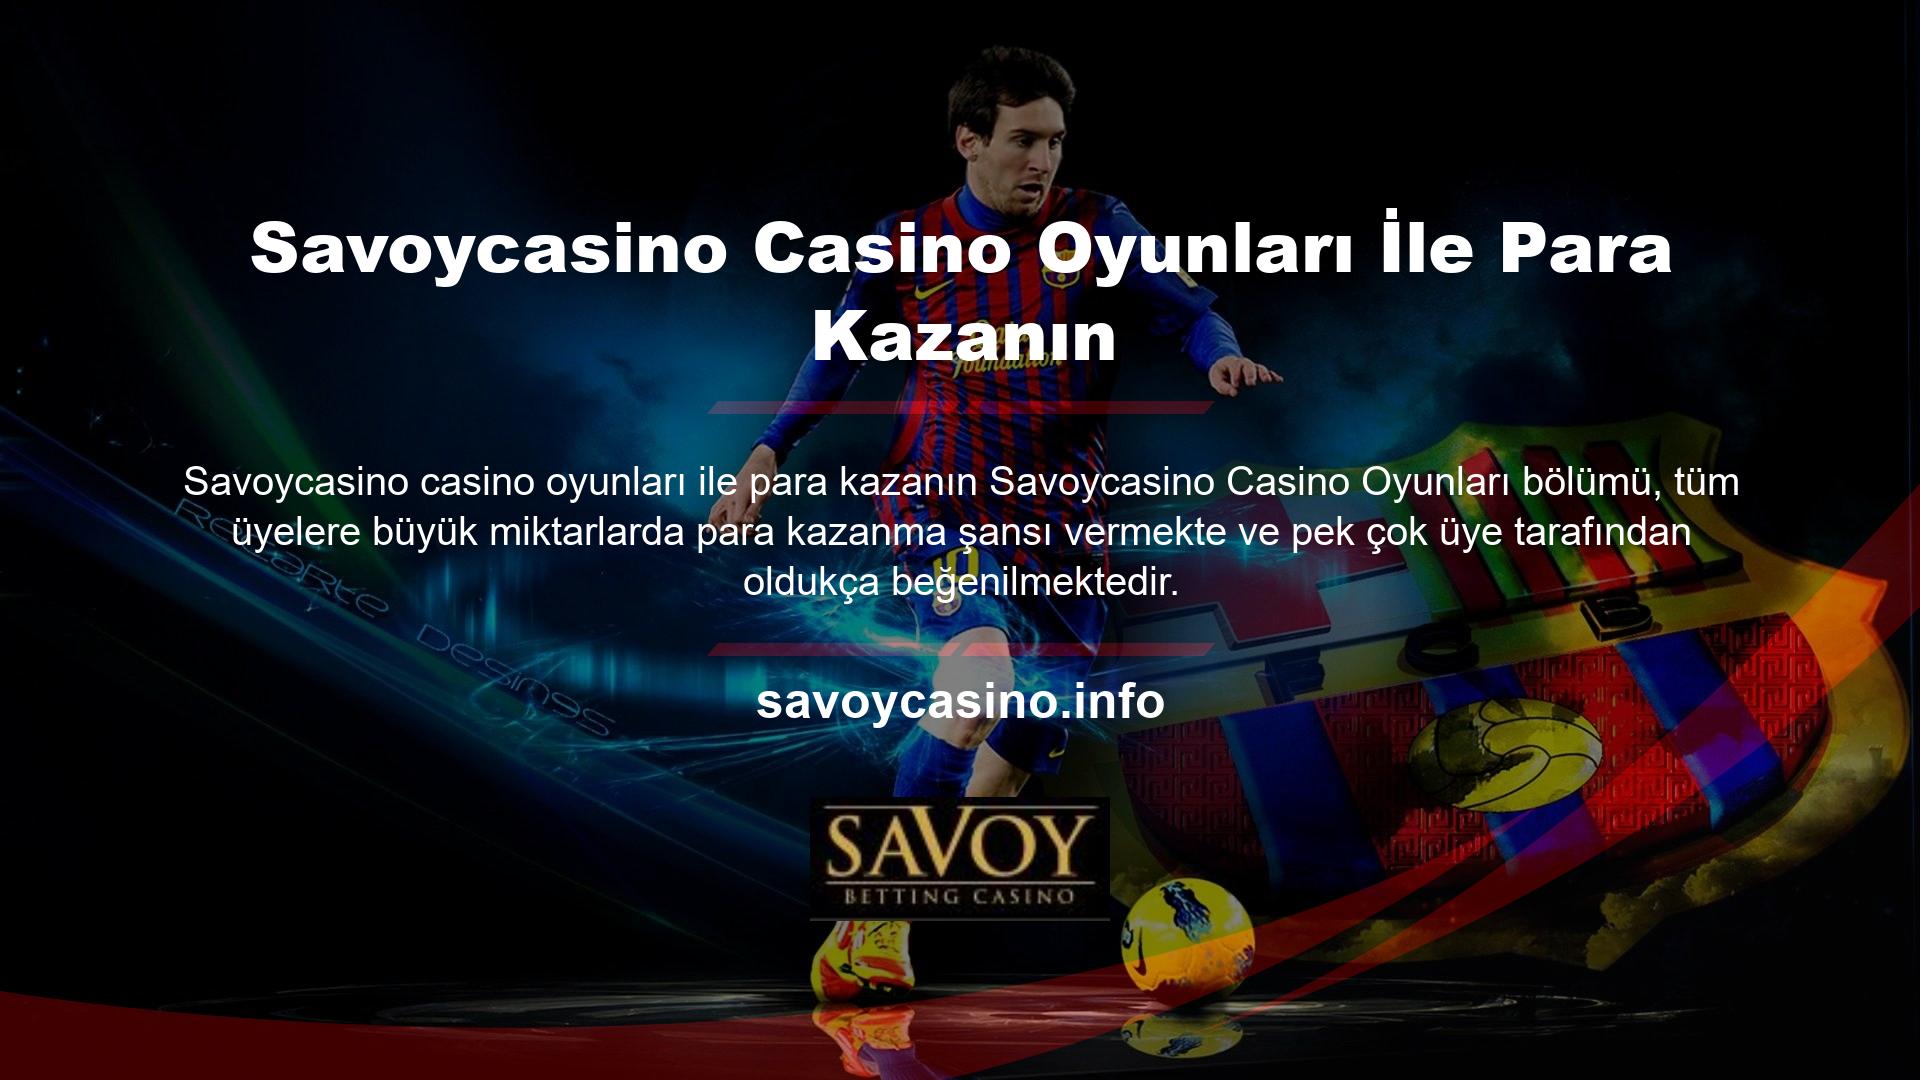 Savoycasino casino oyunlarında para kazanmanın önünde hiçbir olumsuz engel yoktur